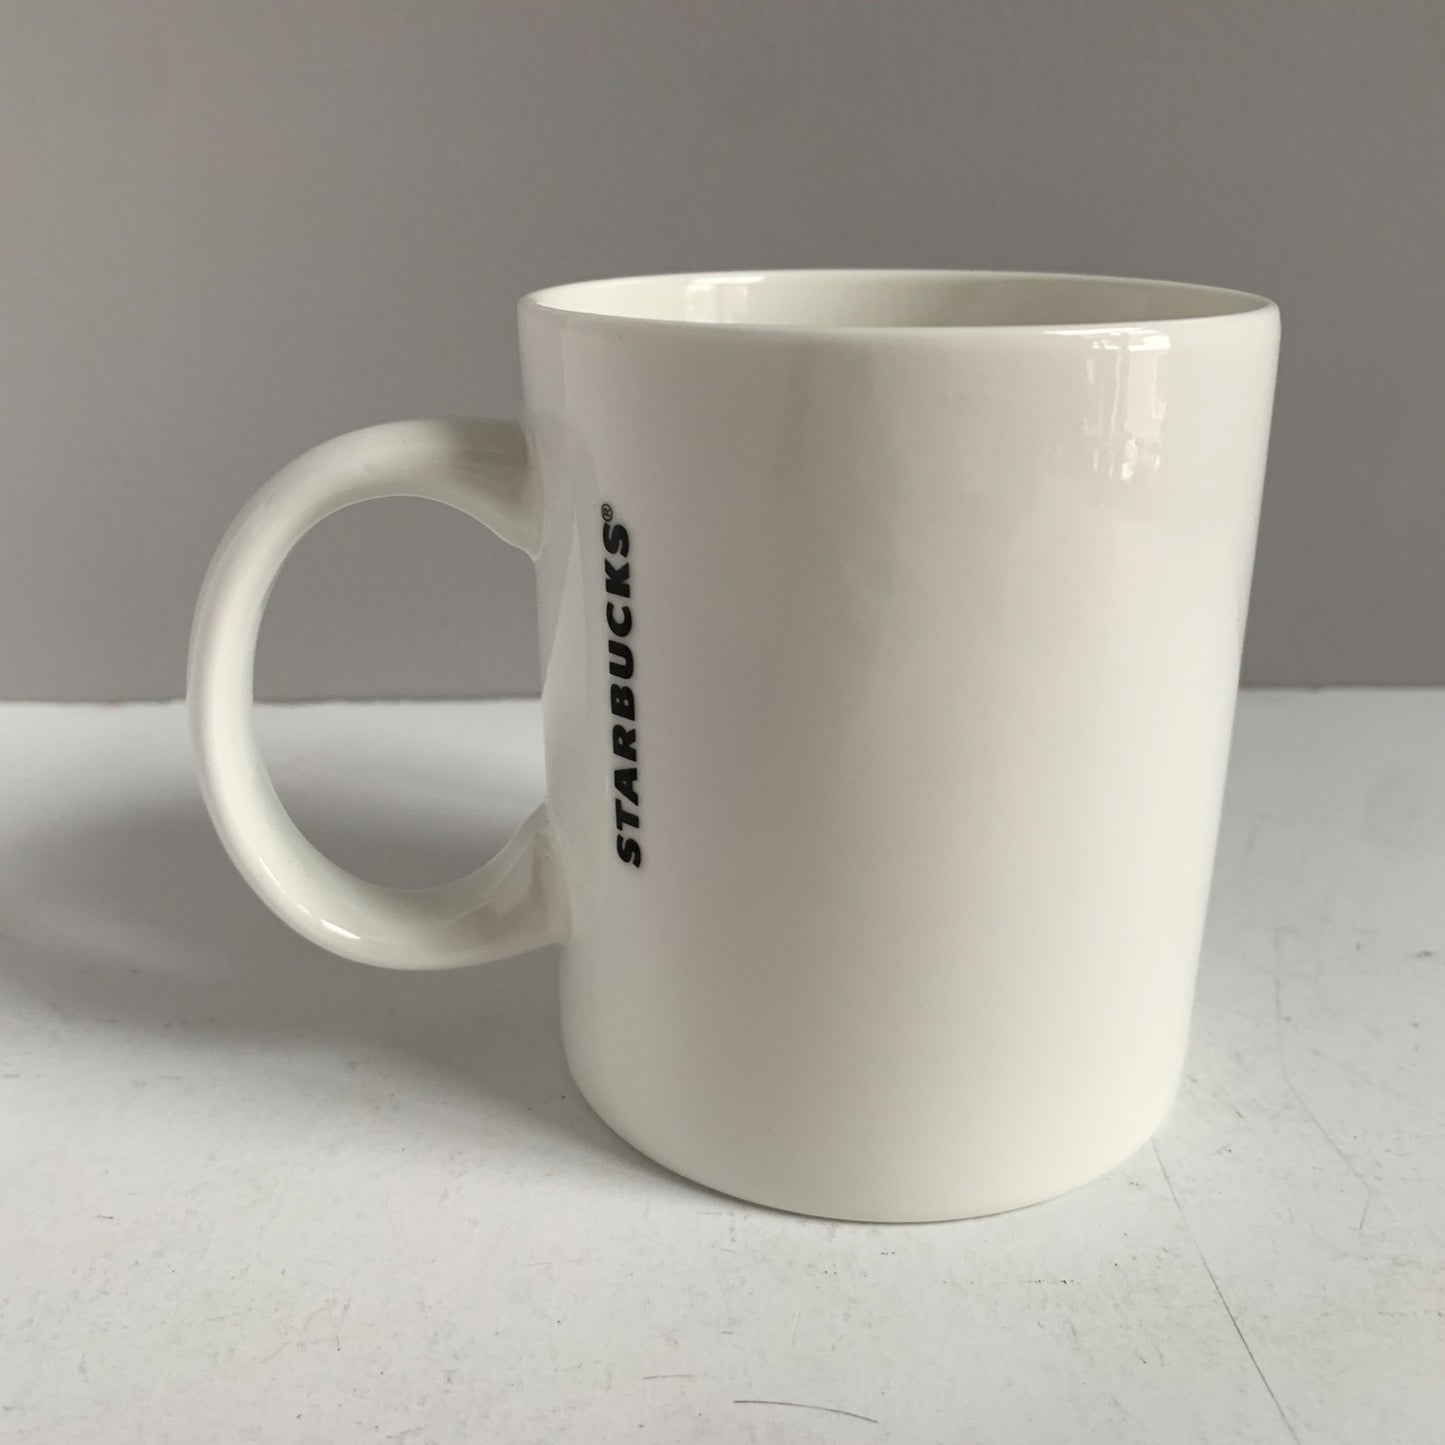 Starbucks 2015 12 oz. Mermaid Logo Coffee Mug Ceramic